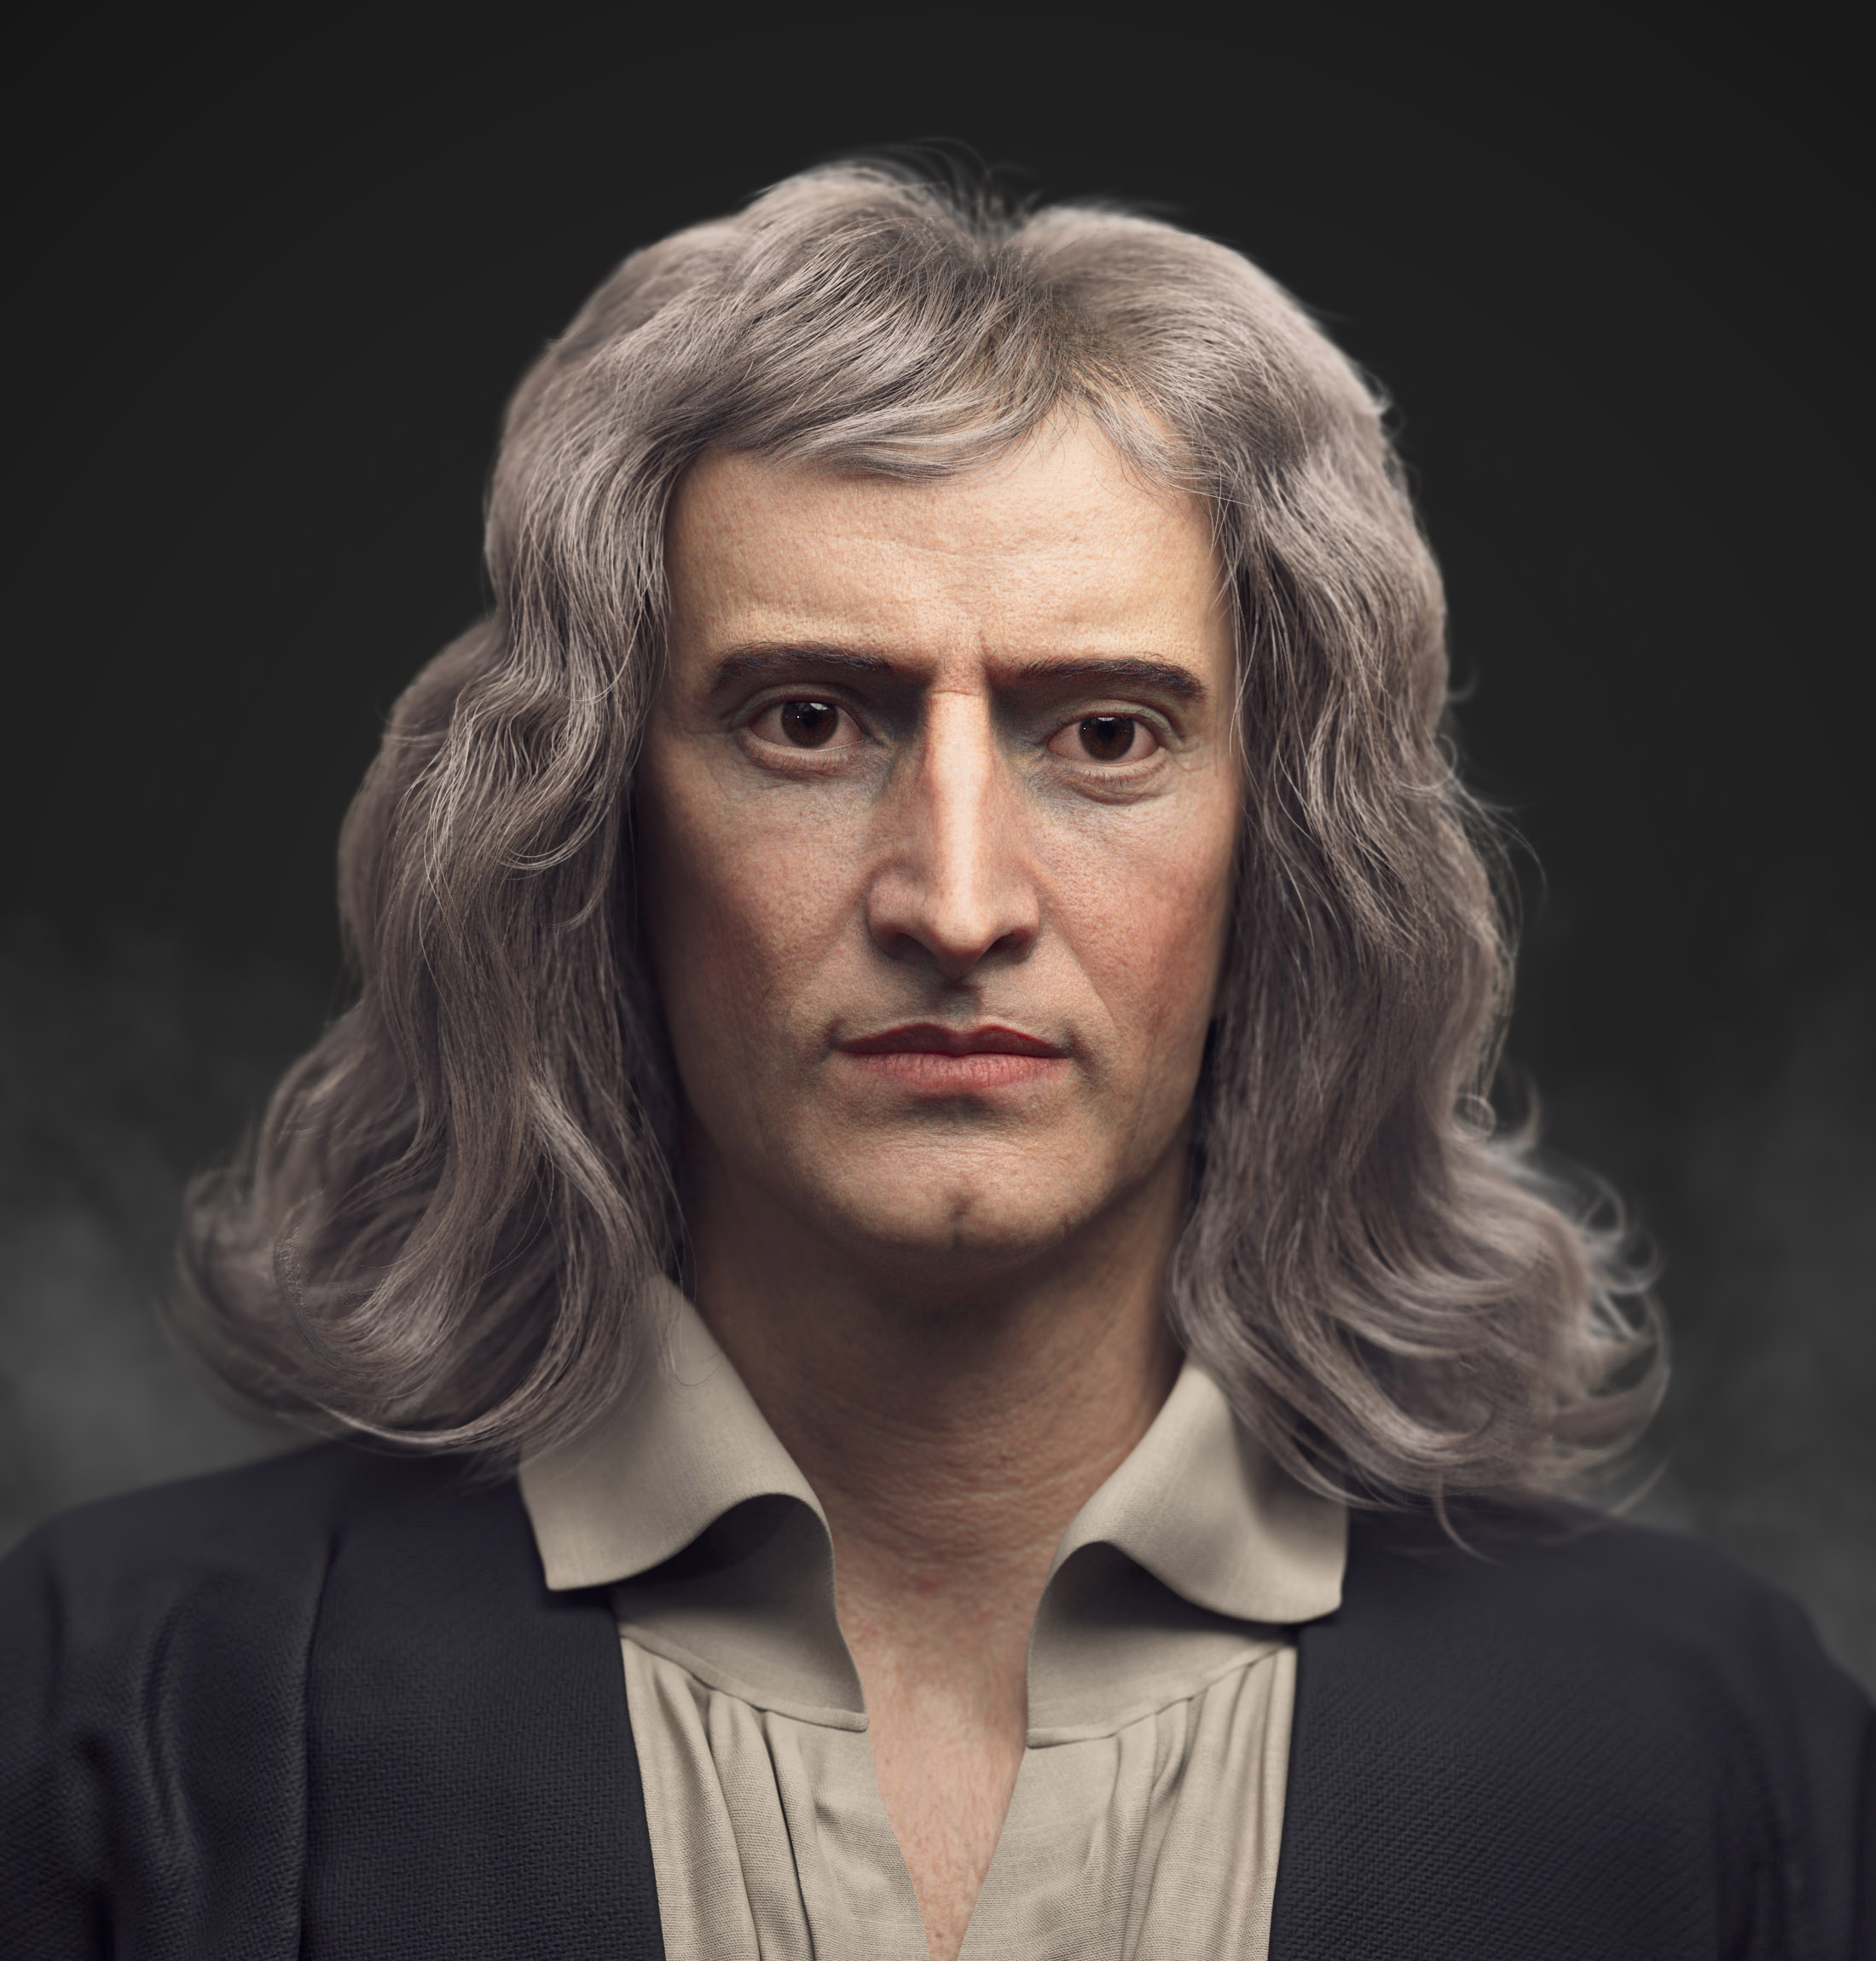 005 Isaac Newton